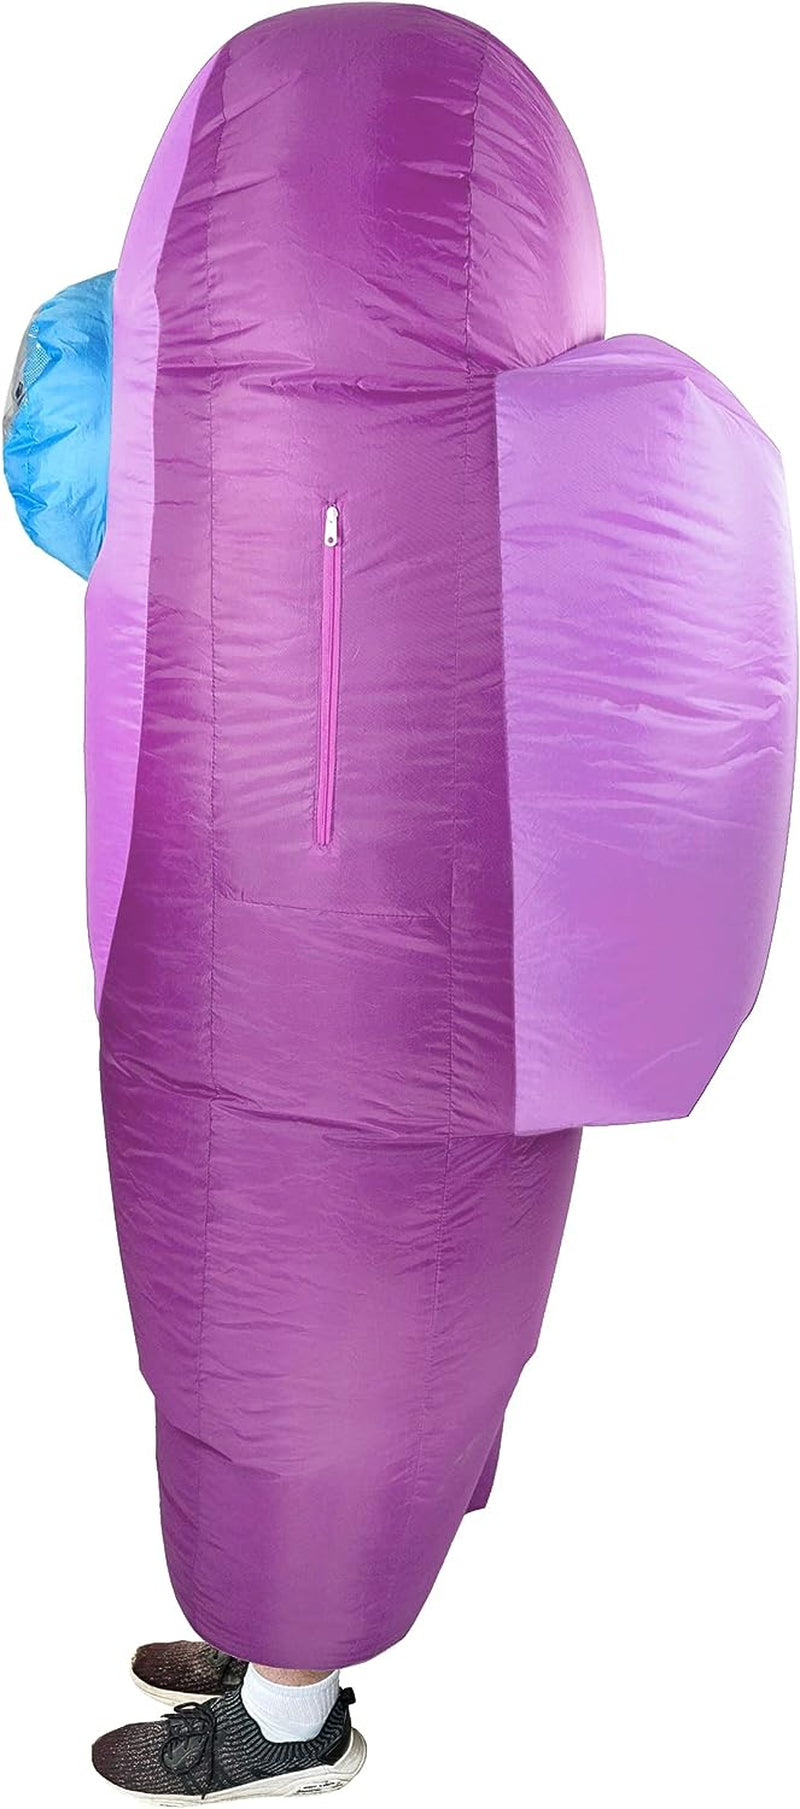 Kid'S Purple Amongst Us Sus Imposter Crewmate Killer Inflatable Costume